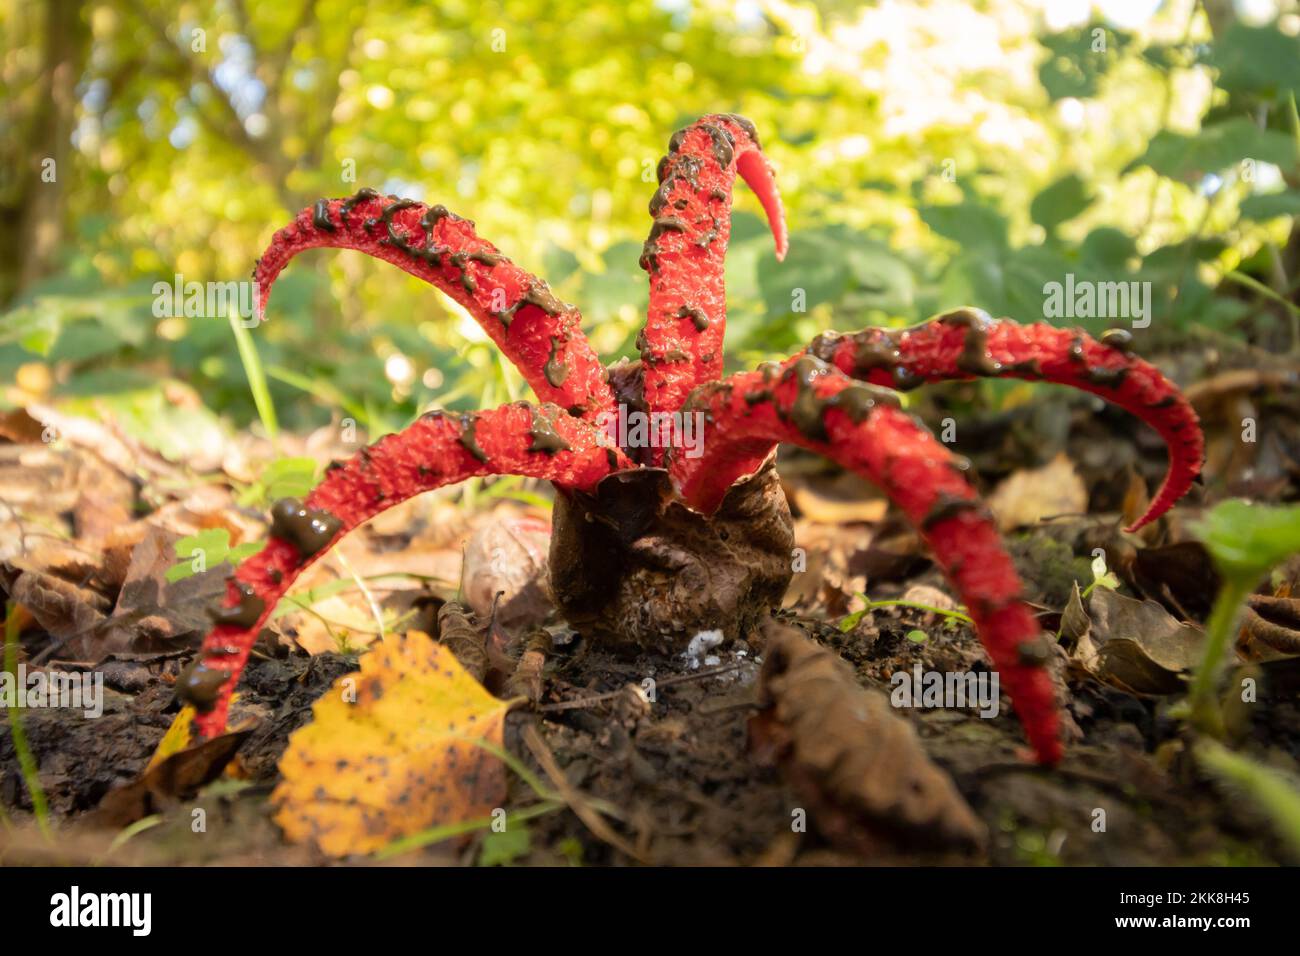 Devil's Fingers (Clathrus archeri) fungus. Sussex, UK. Stock Photo